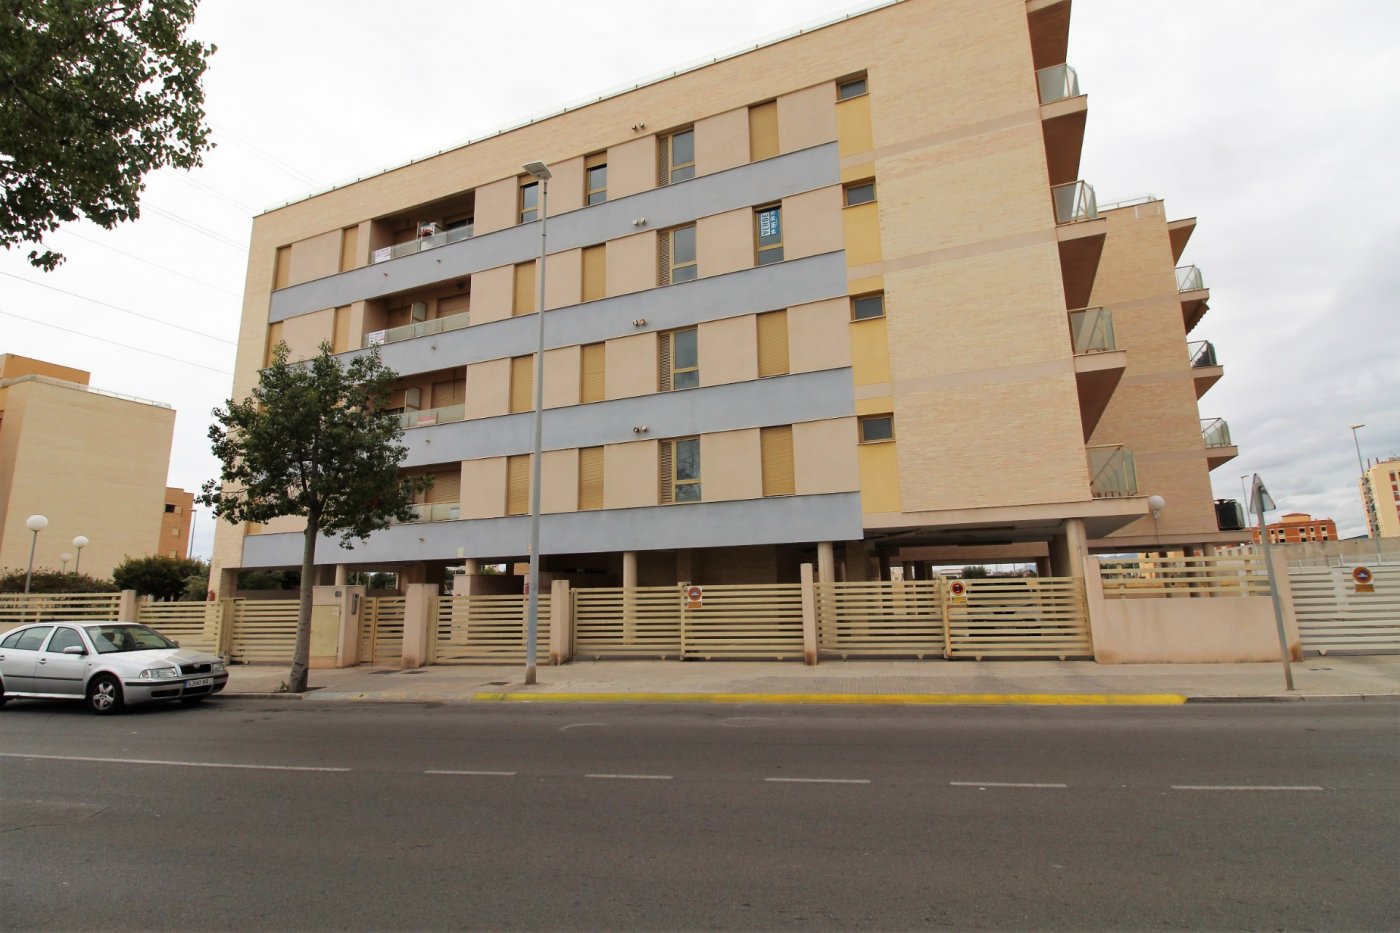 Se venden viviendas e inmuebles en Almazora - Almassora